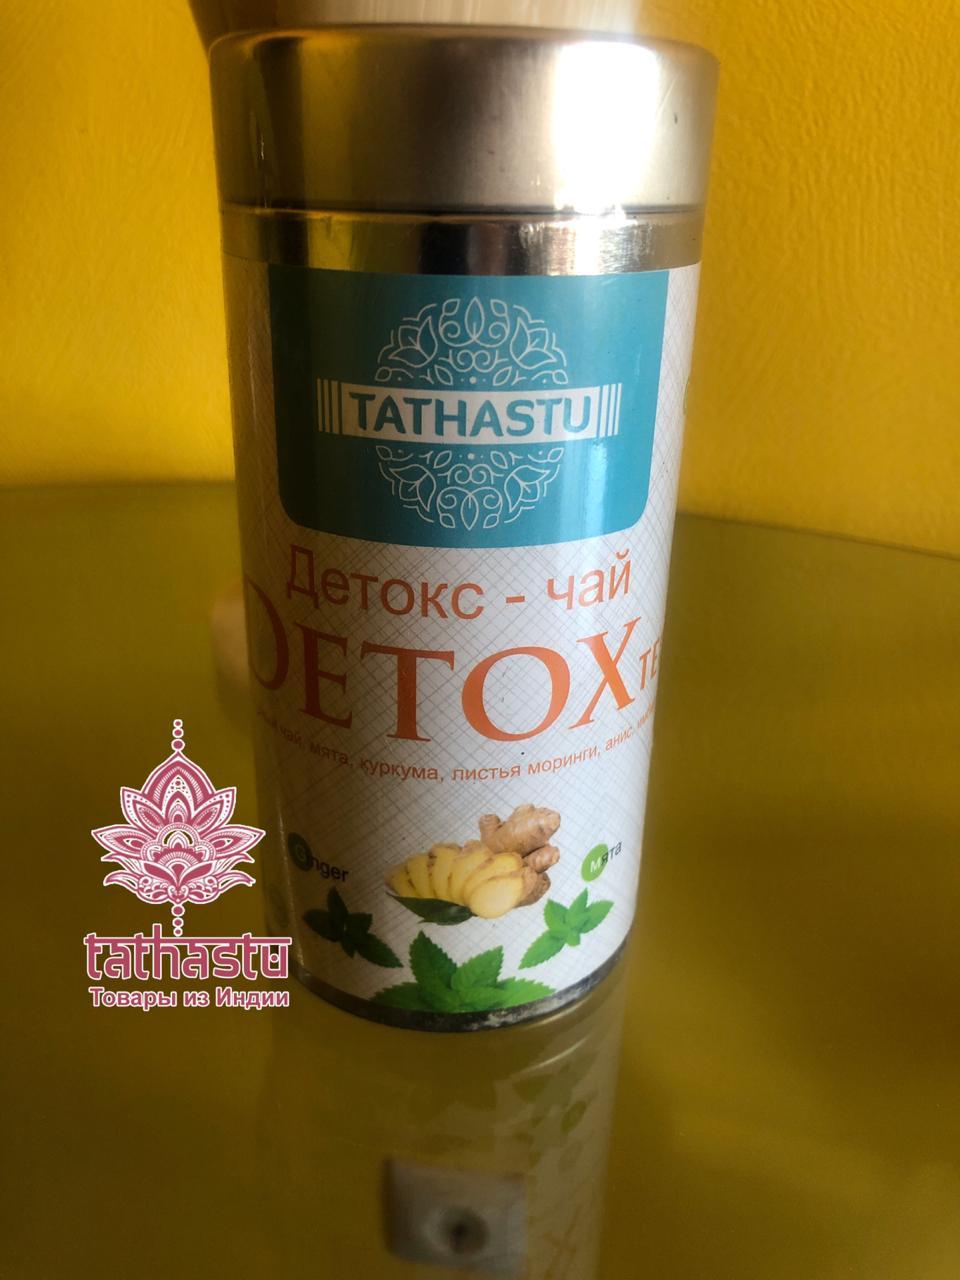 Tathastu детокс чай. Tathastu товары и индии